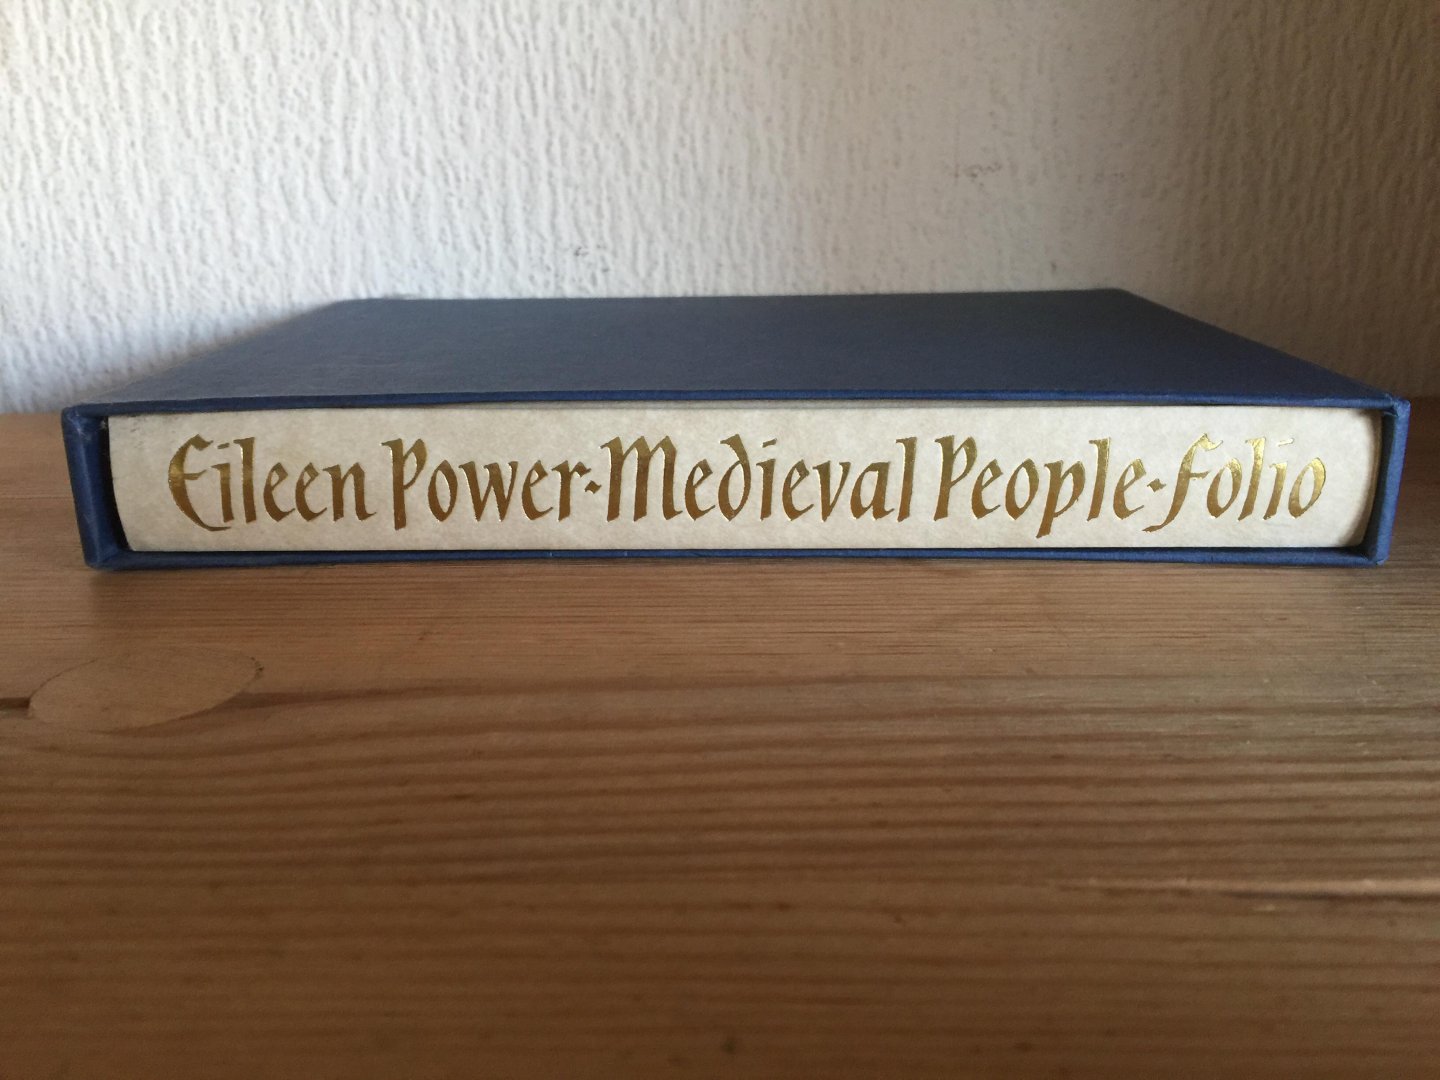 Eileen Powers - Medieval People folio